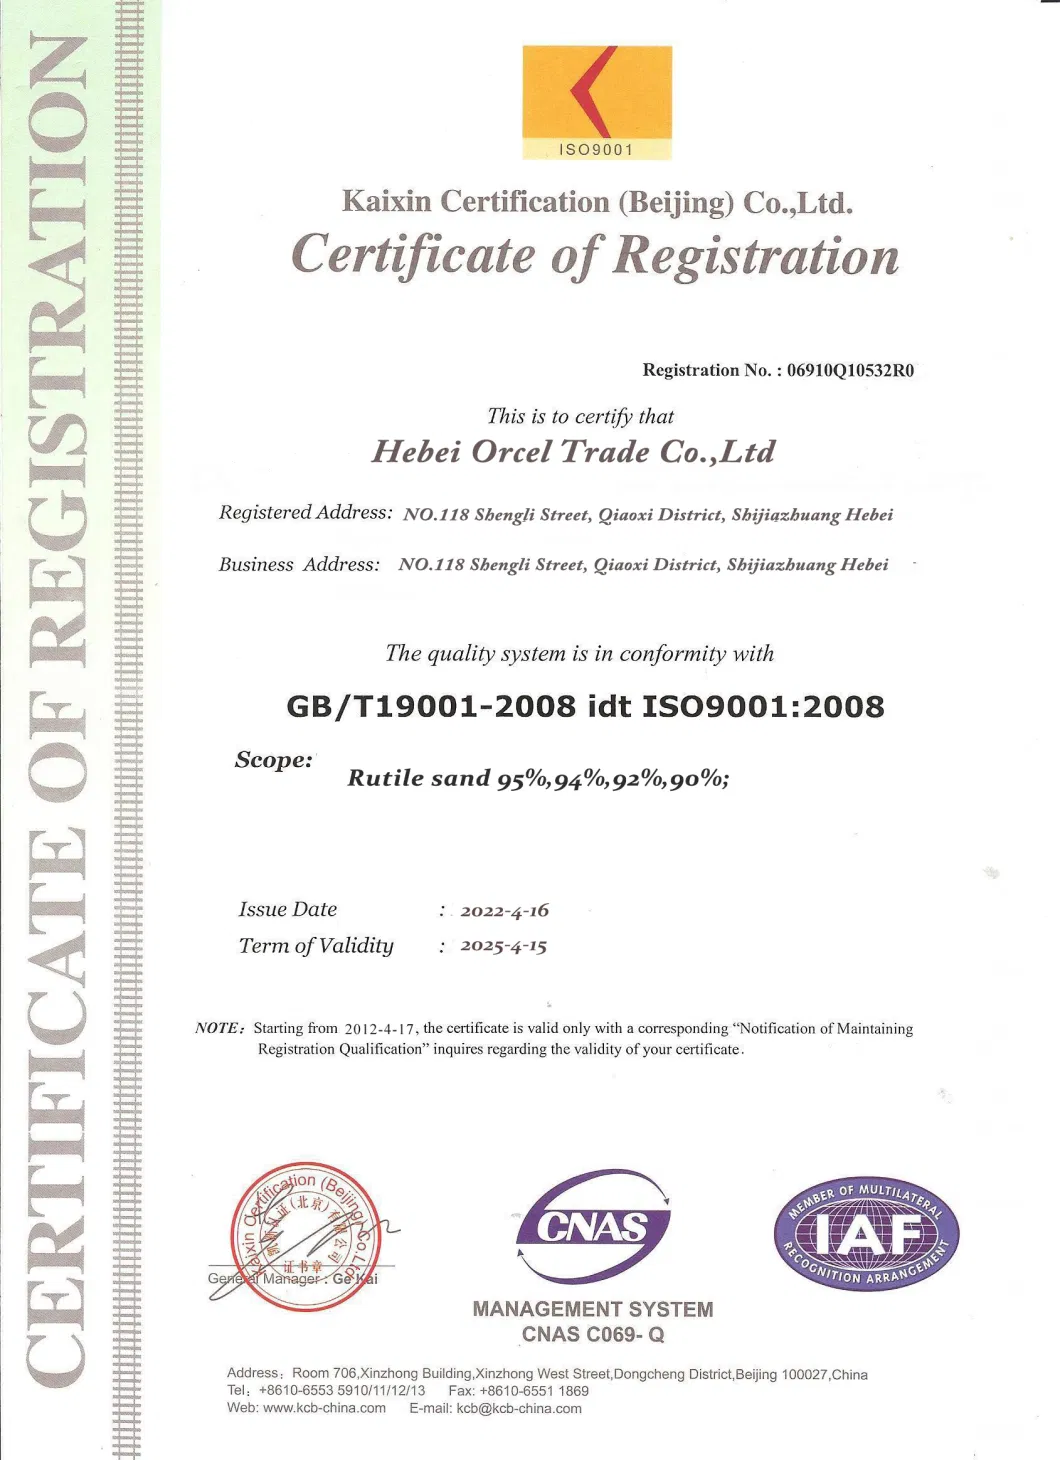 High Quality TiO2 99.9% Pure CAS. 13463-67-7 Industrial Grade Rutile Titanium Dioxide